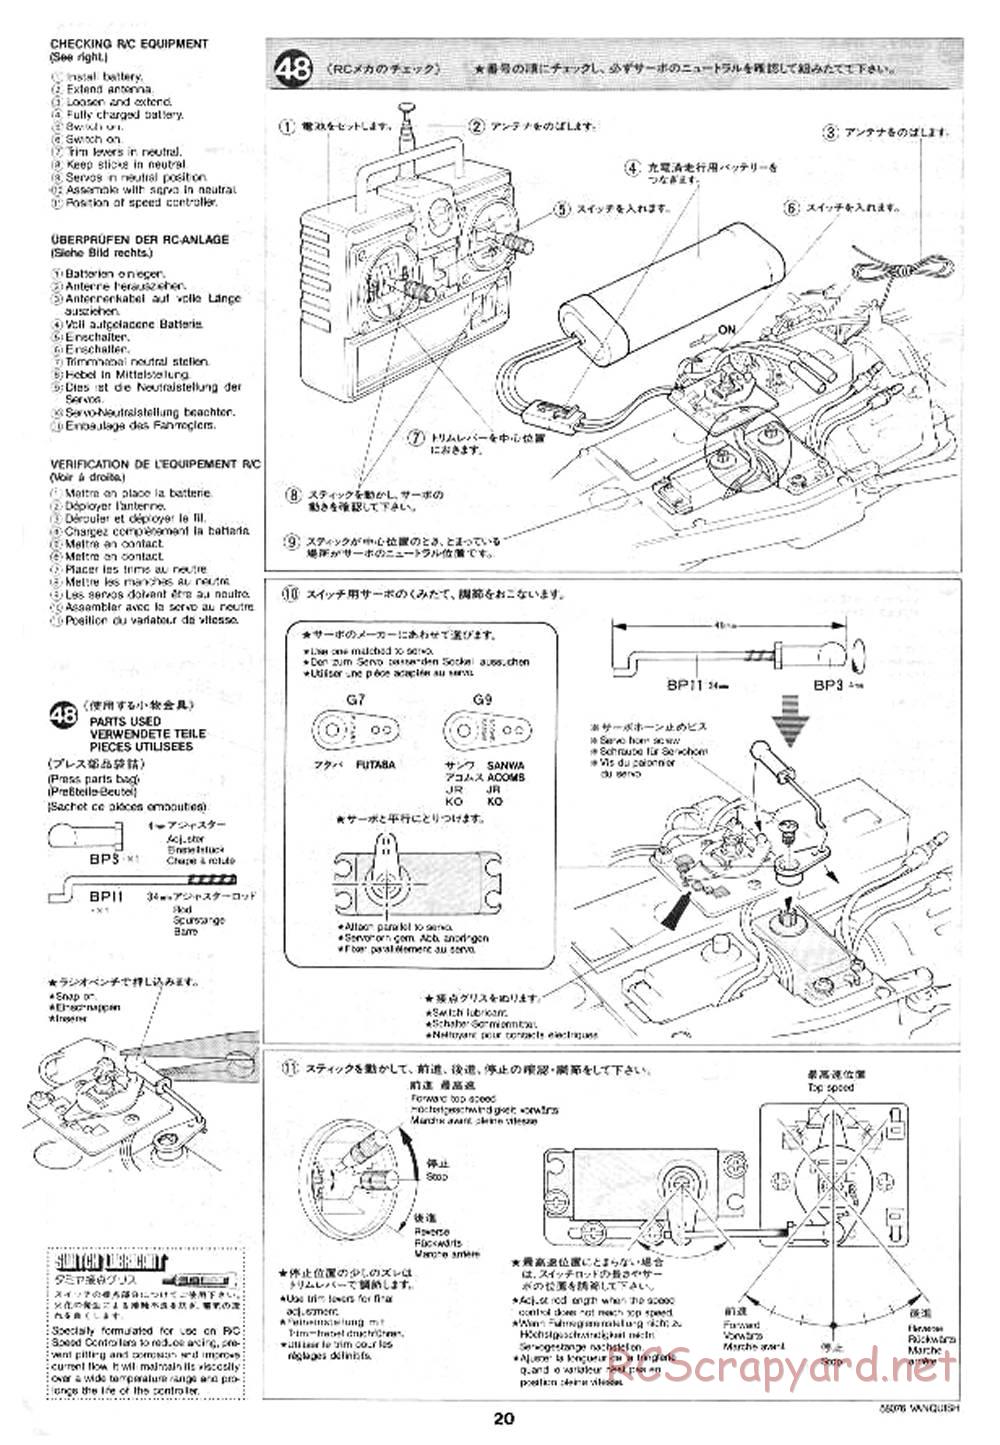 Tamiya - Vanquish - 58076 - Manual - Page 20